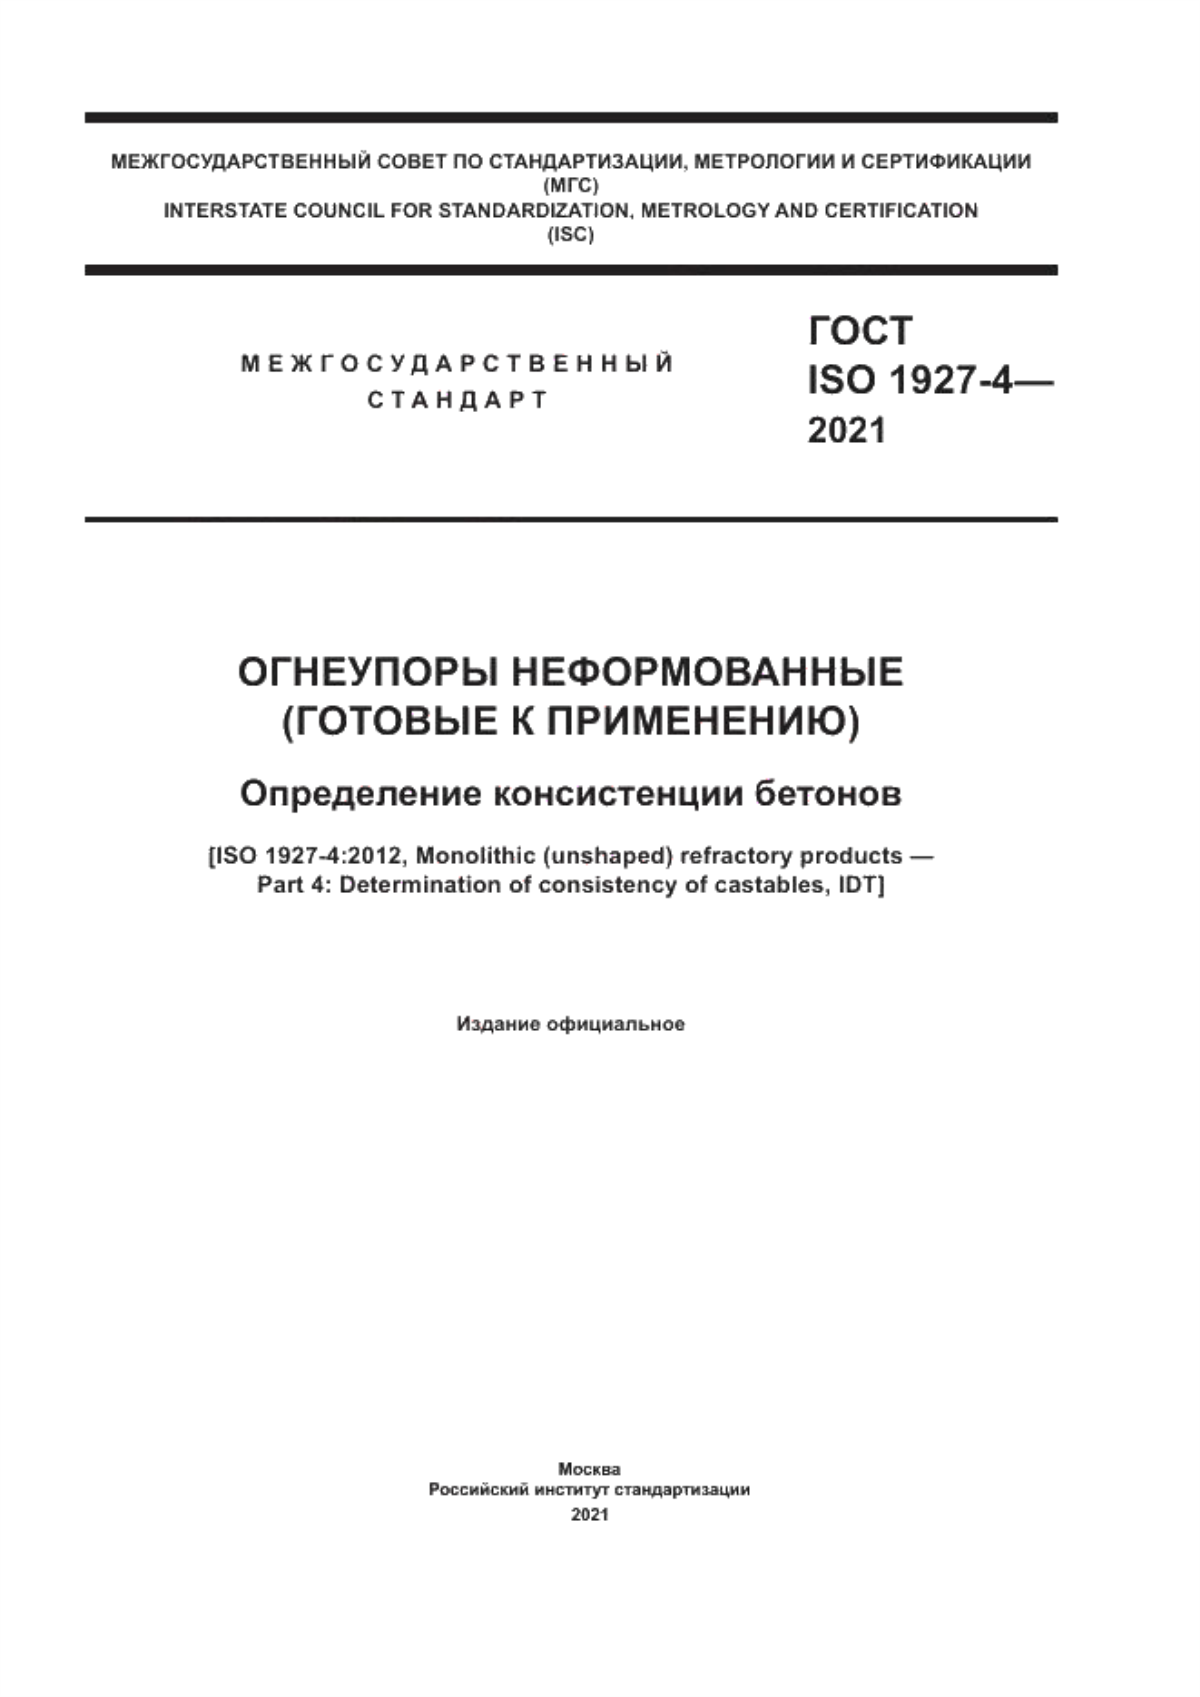 ГОСТ ISO 1927-4-2021 Огнеупоры неформованные (готовые к применению). Определение консистенции бетонов